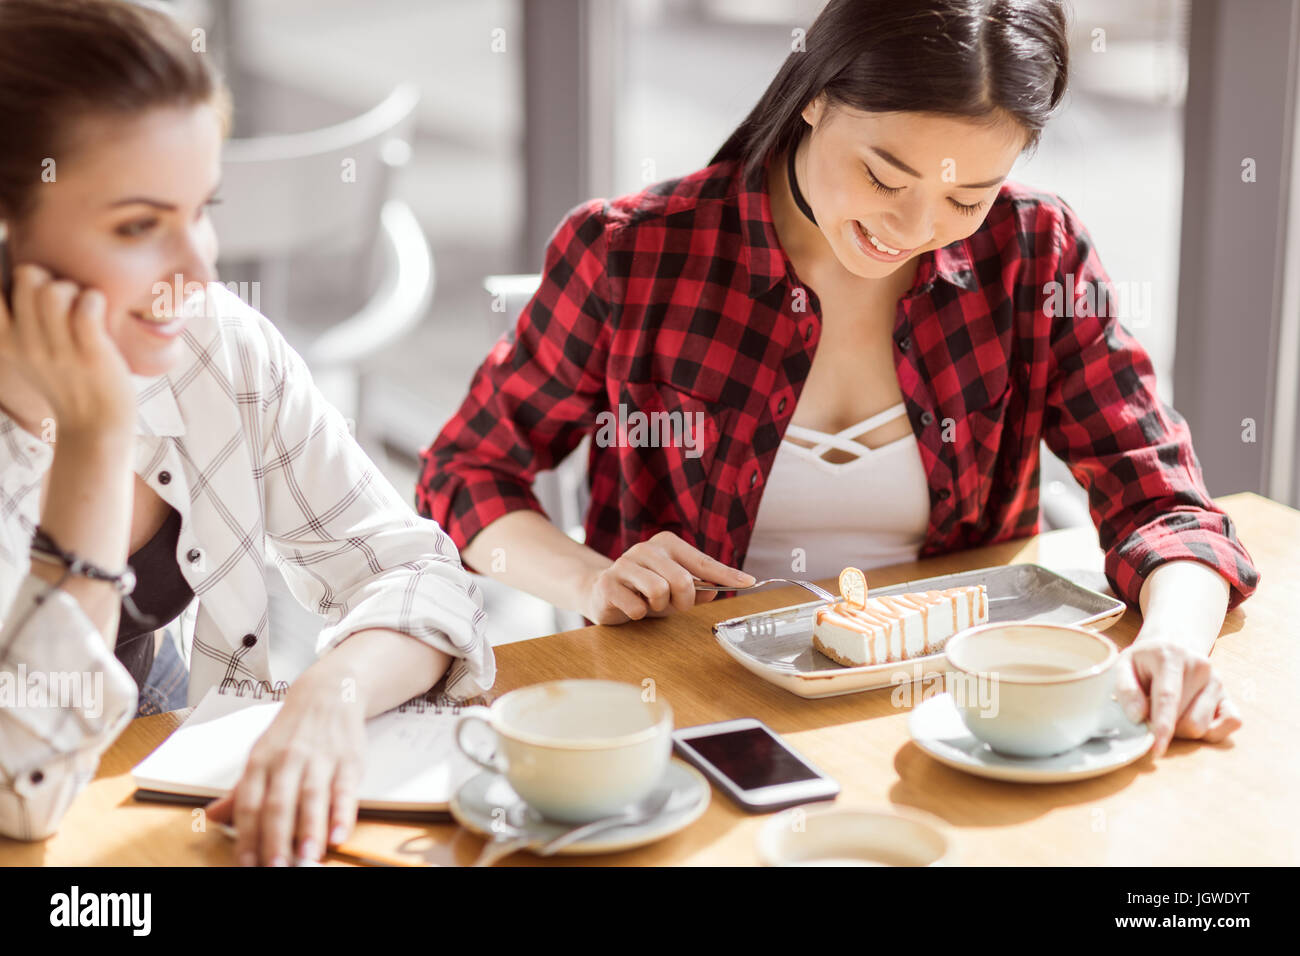 Les jeunes filles manger un gâteau et de boire du café au café, la pause-café Banque D'Images